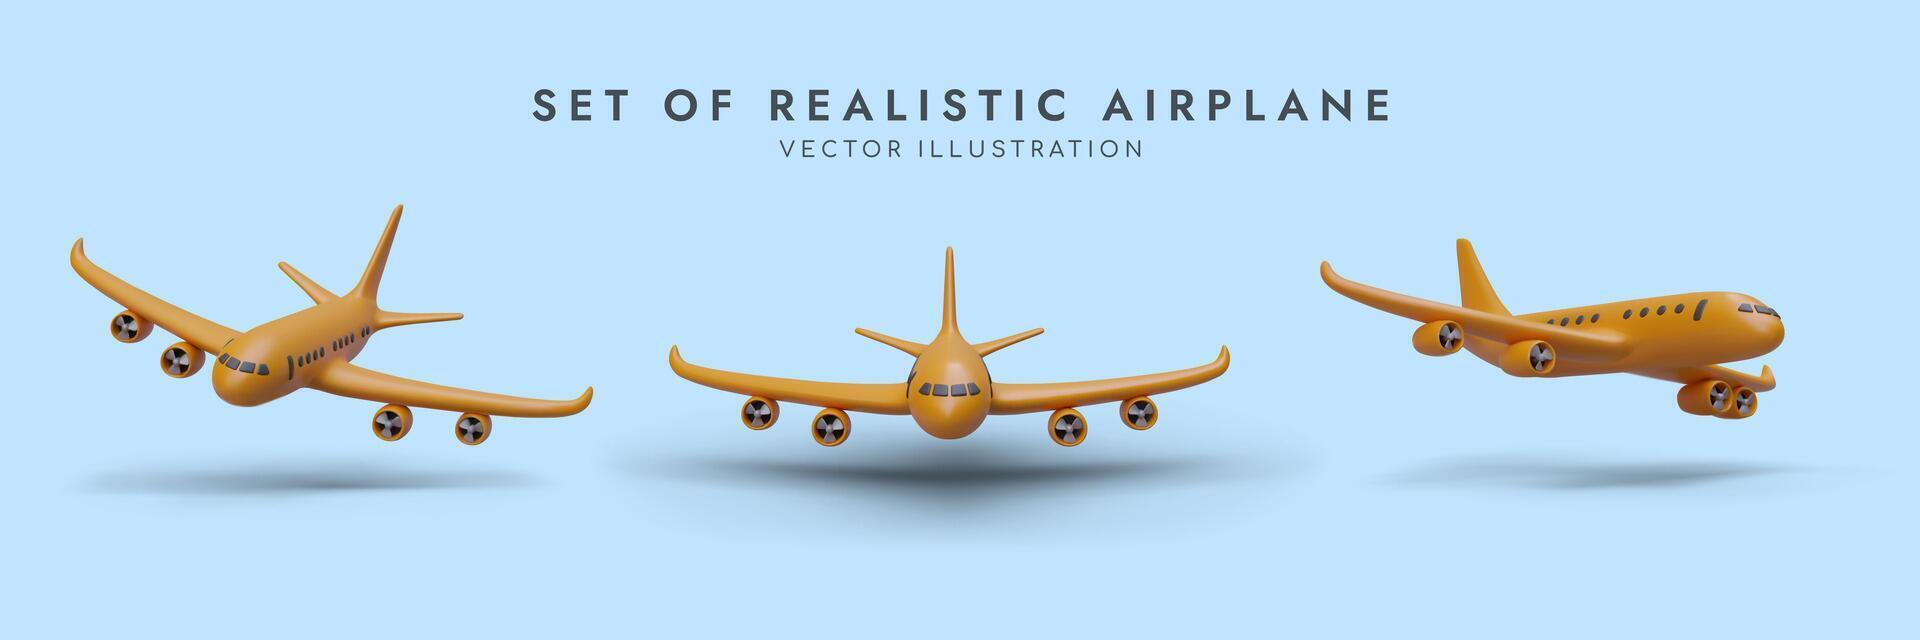 einstellen von Karikatur realistisch 3d Flugzeuge im anders Positionen. Gelb Flugzeug fliegend auf Blau Hintergrund vektor